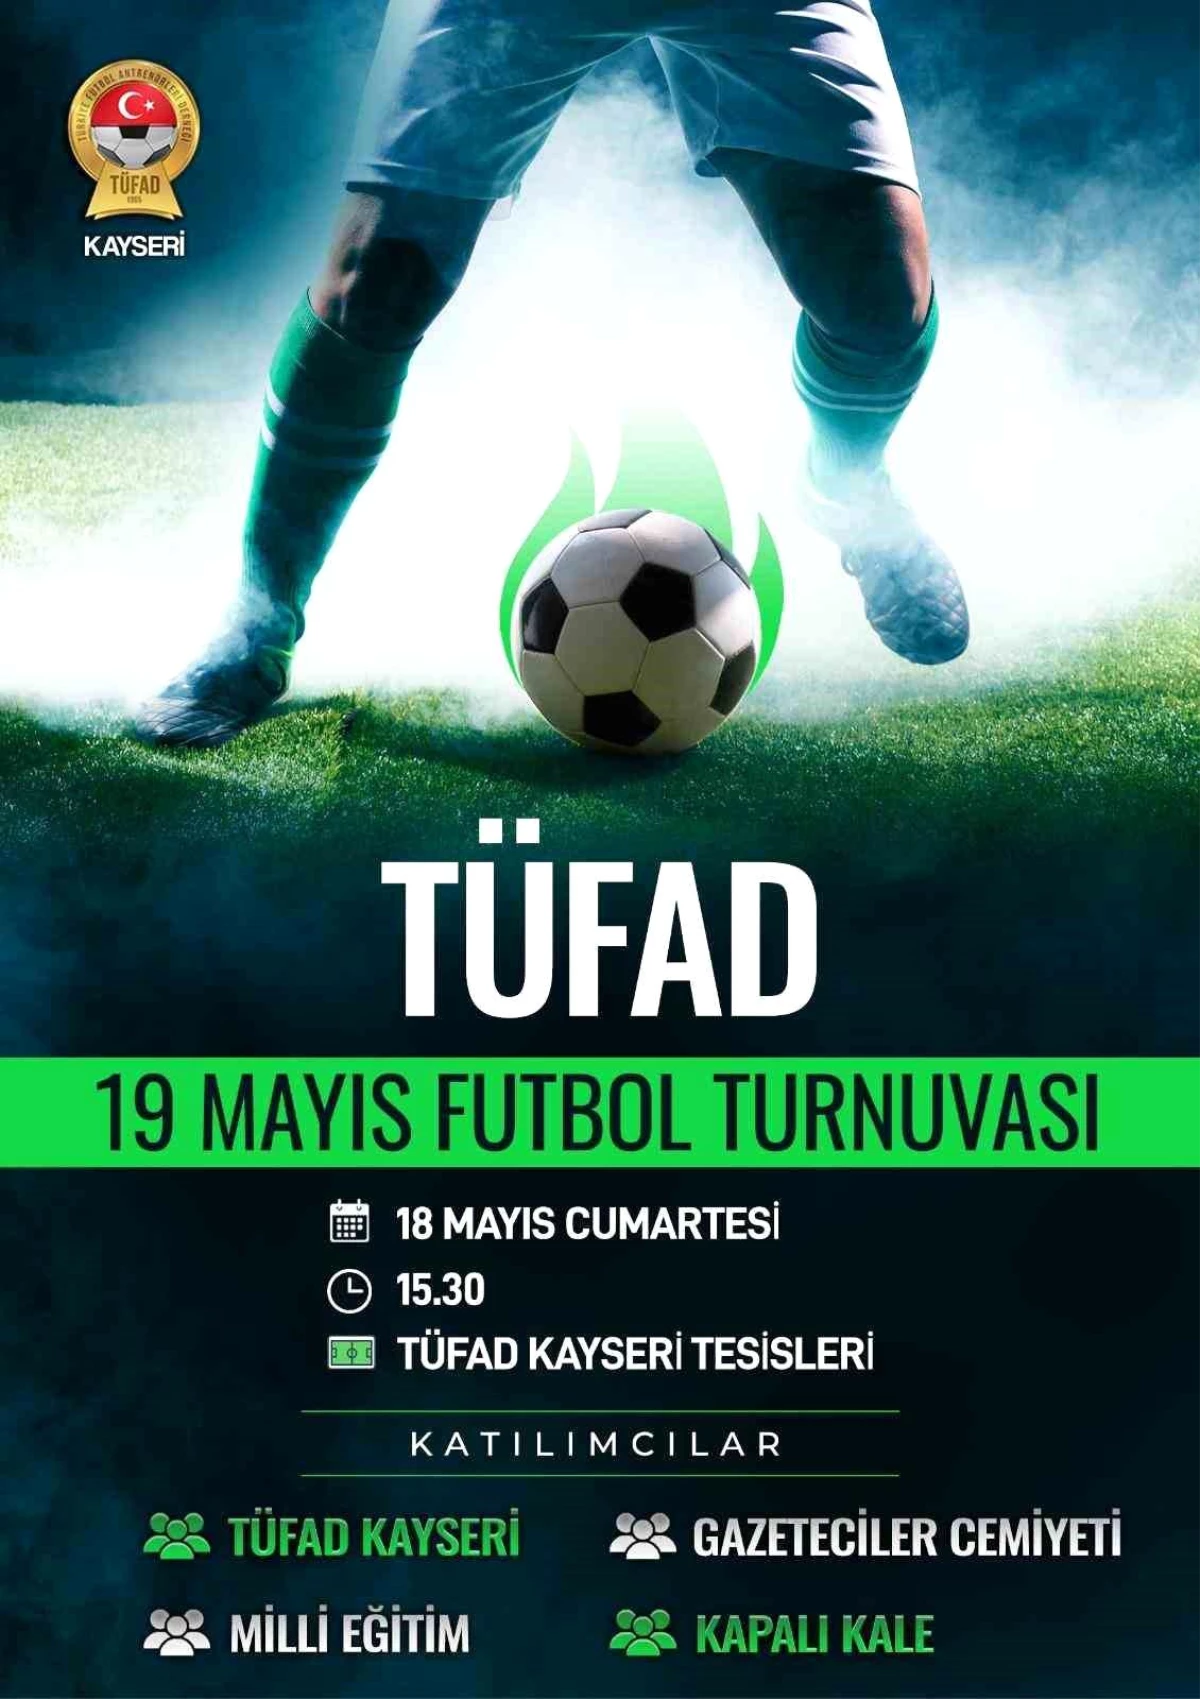 TÜFAD Kayseri Şubesi tarafından 19 Mayıs Futbol Turnuvası düzenlenecek